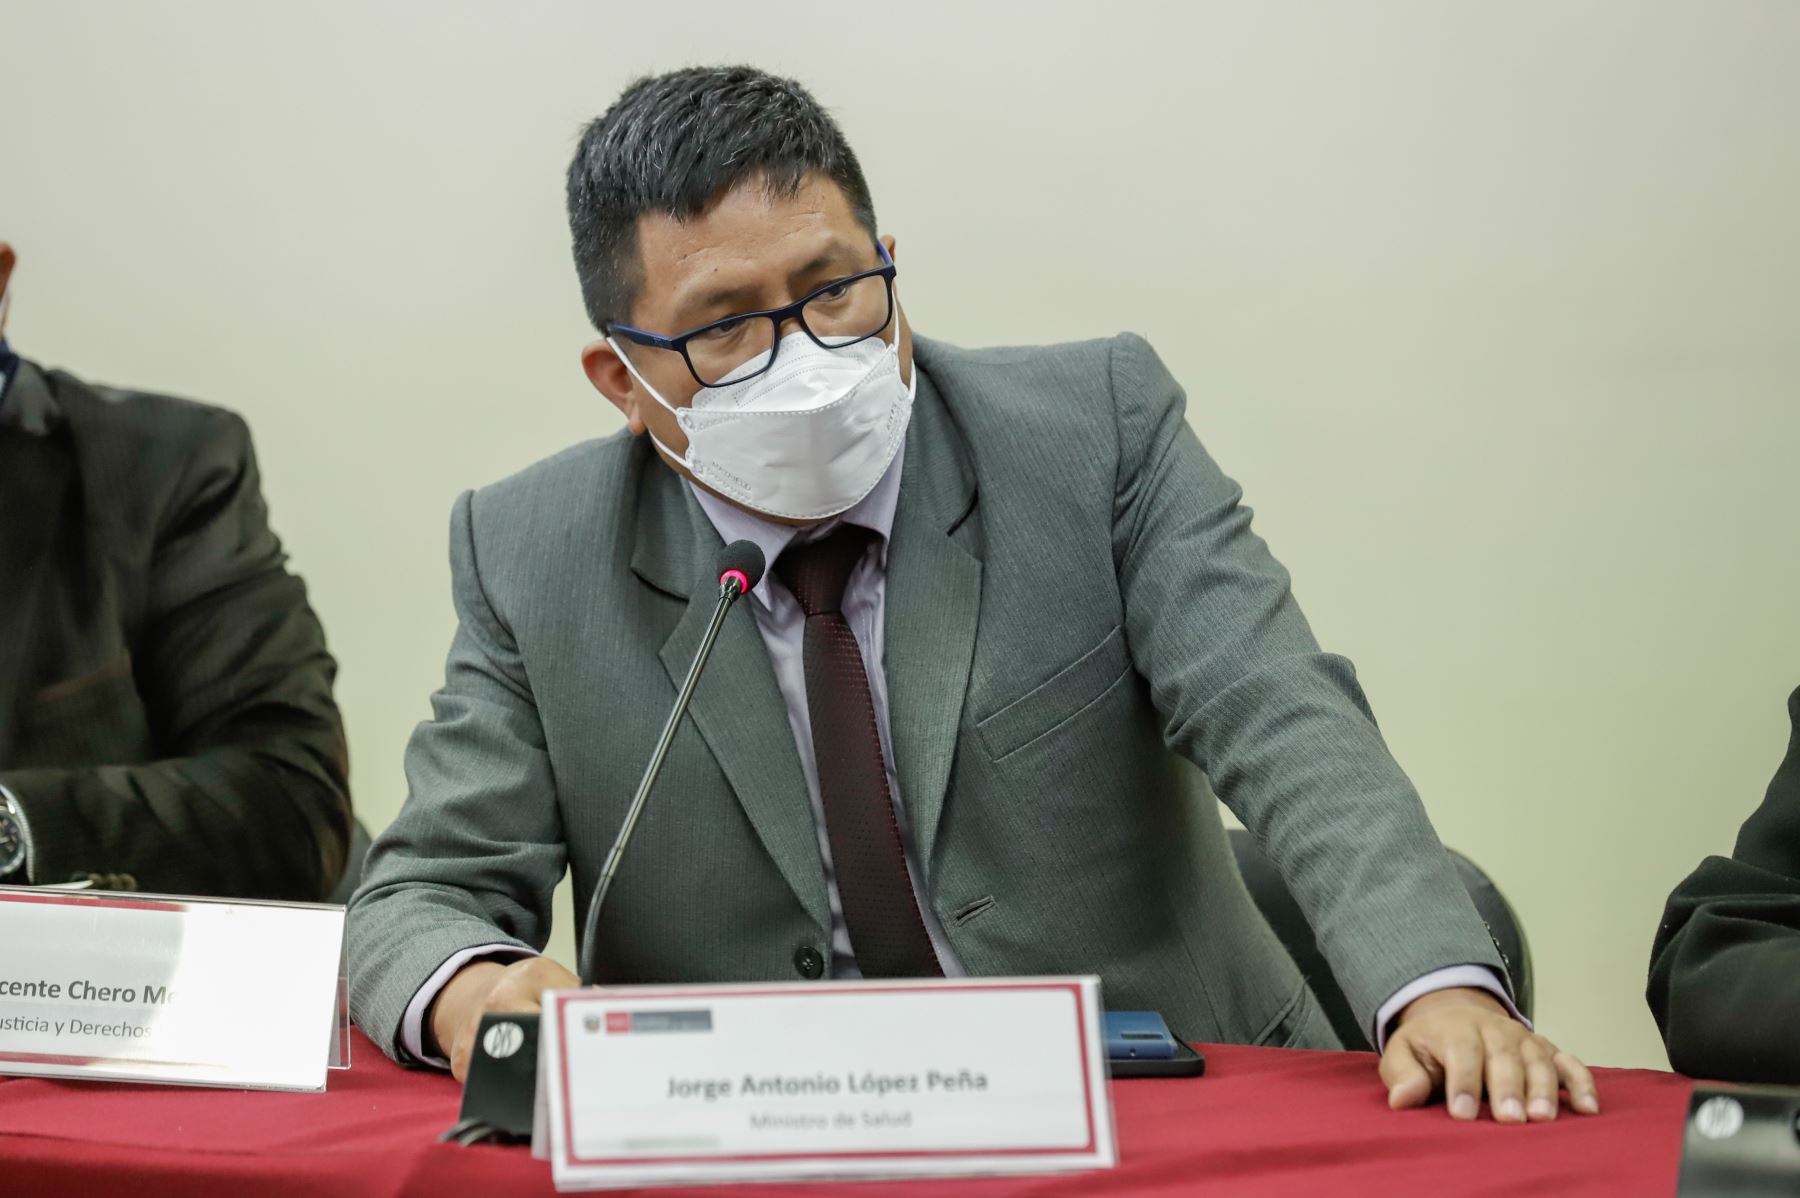 Ministro de Salud, Jorge López Peña, anunció medidas para mejorar situación de los profesionales de salud contratados bajo la modalidad de CAS Covid-19. ANDINA